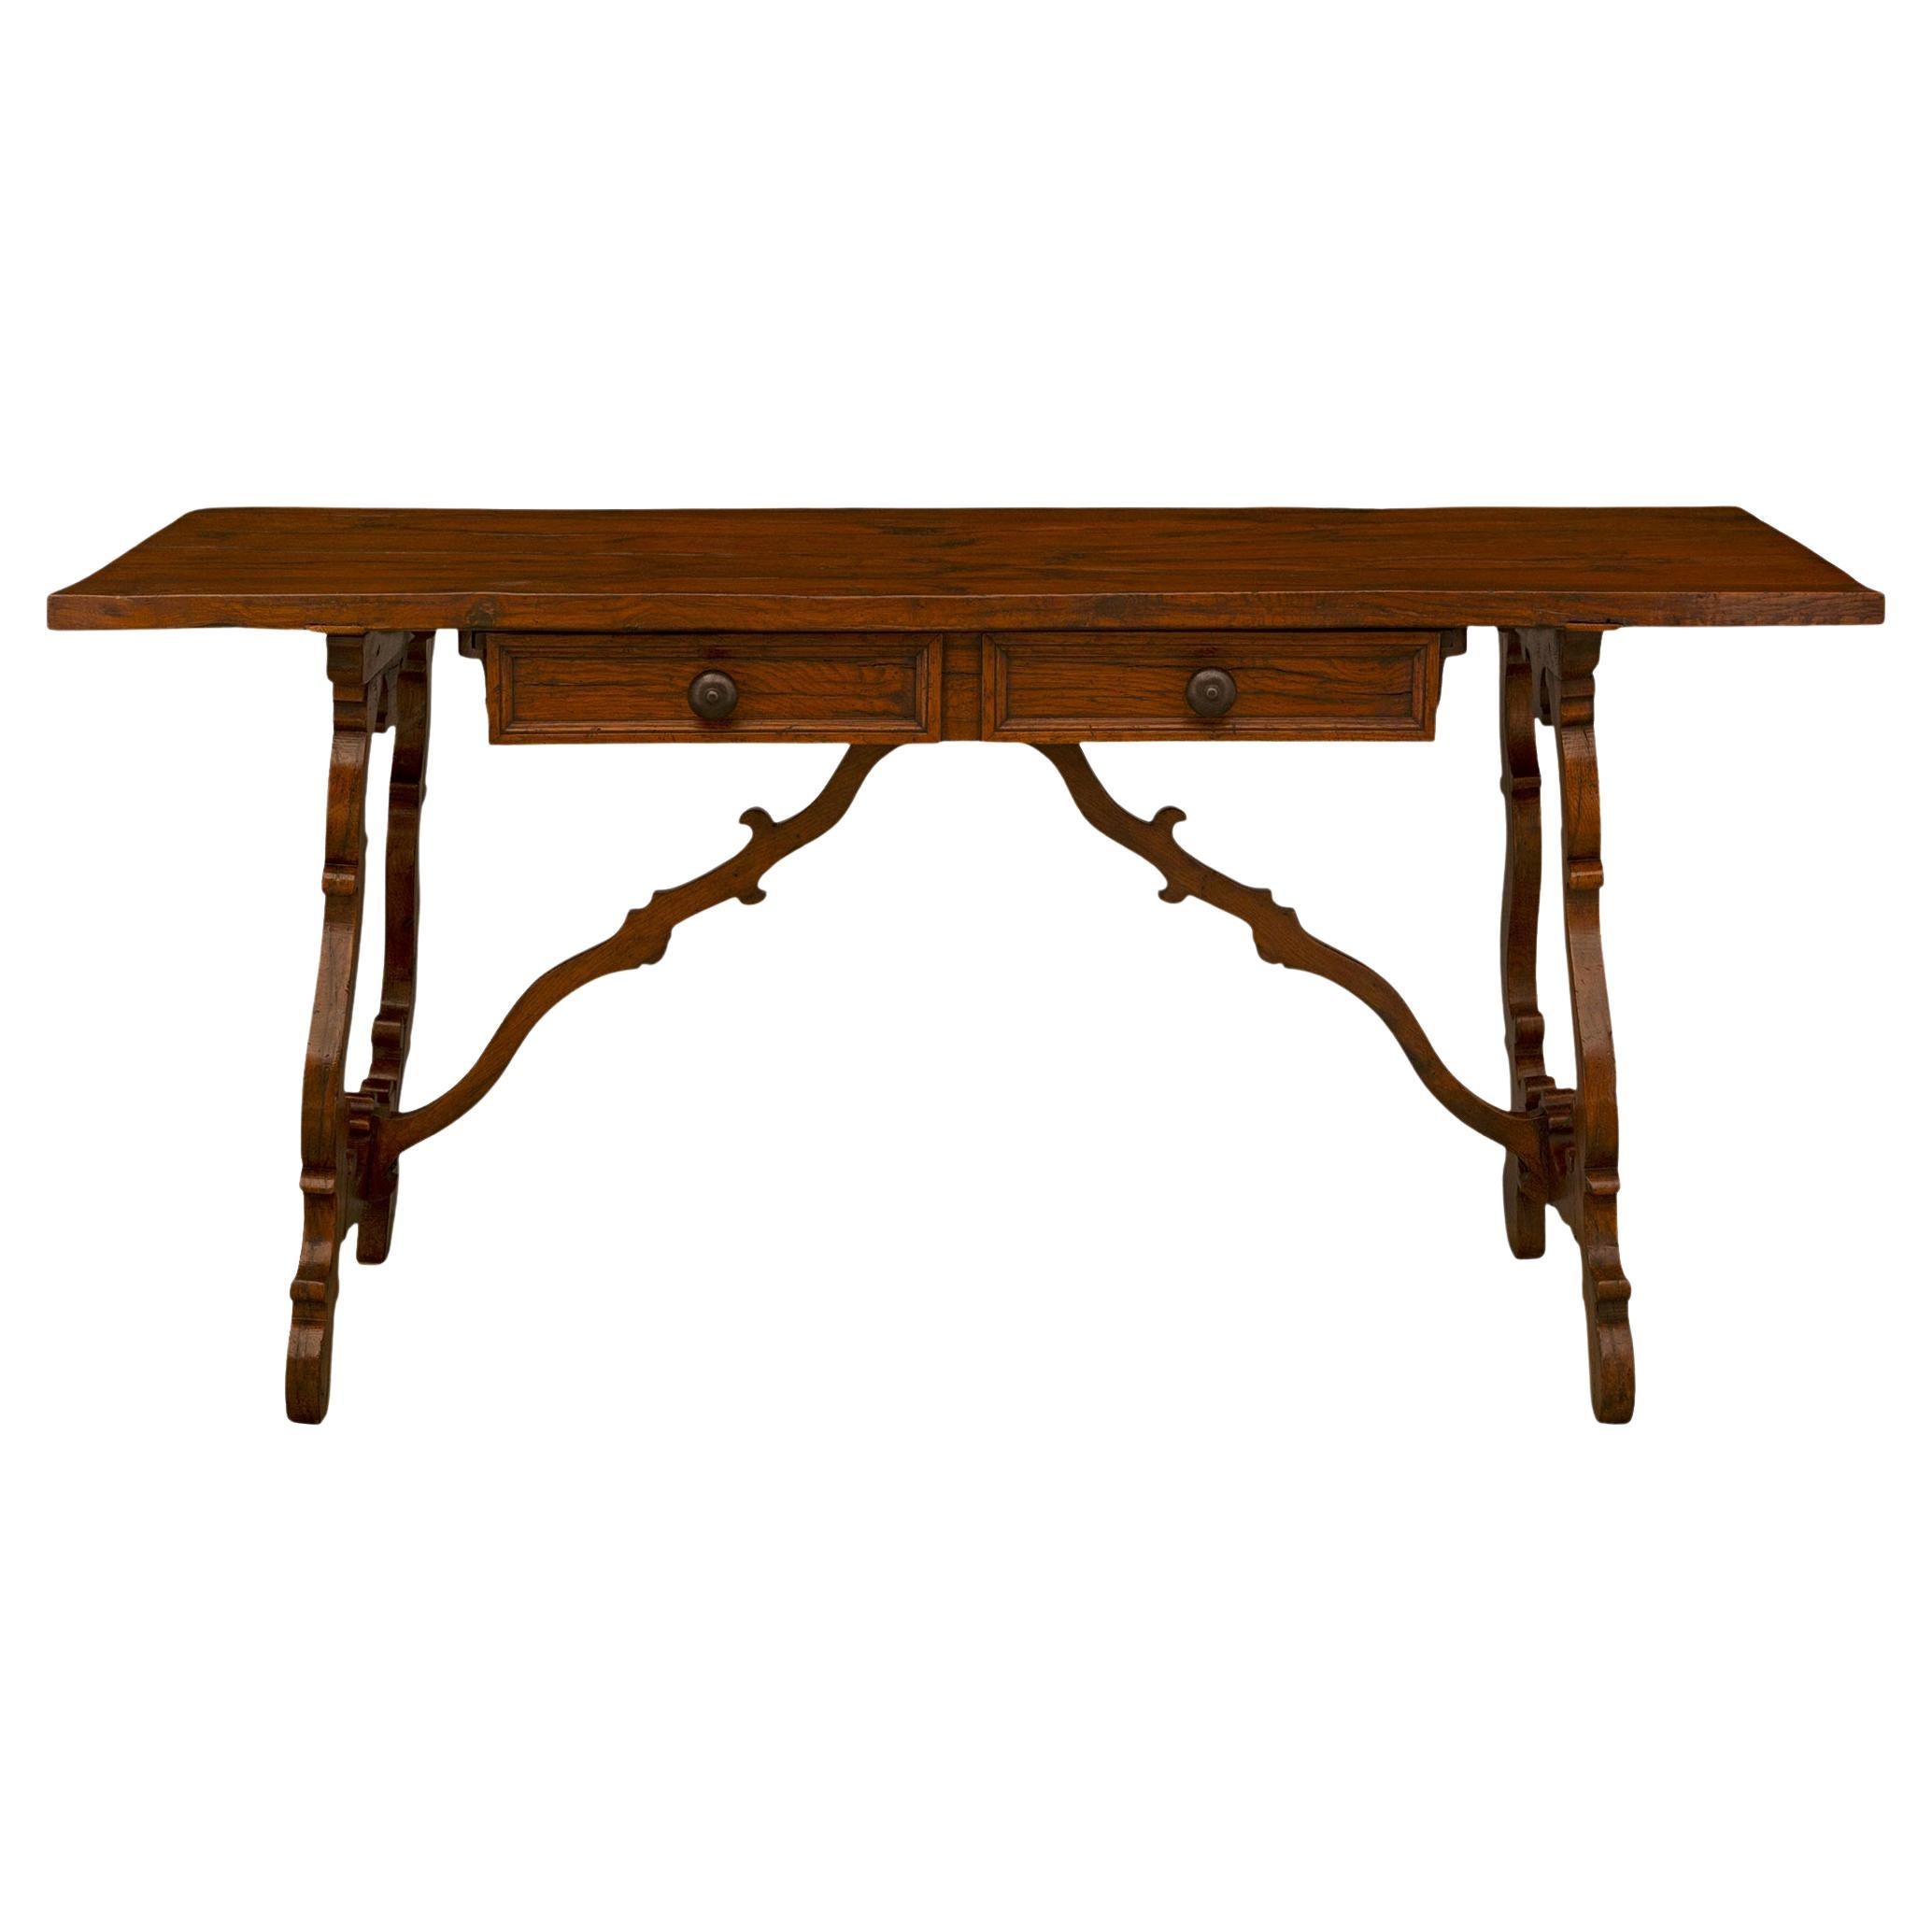 Magnifique table à tréteaux en Oak du 19ème siècle italien.